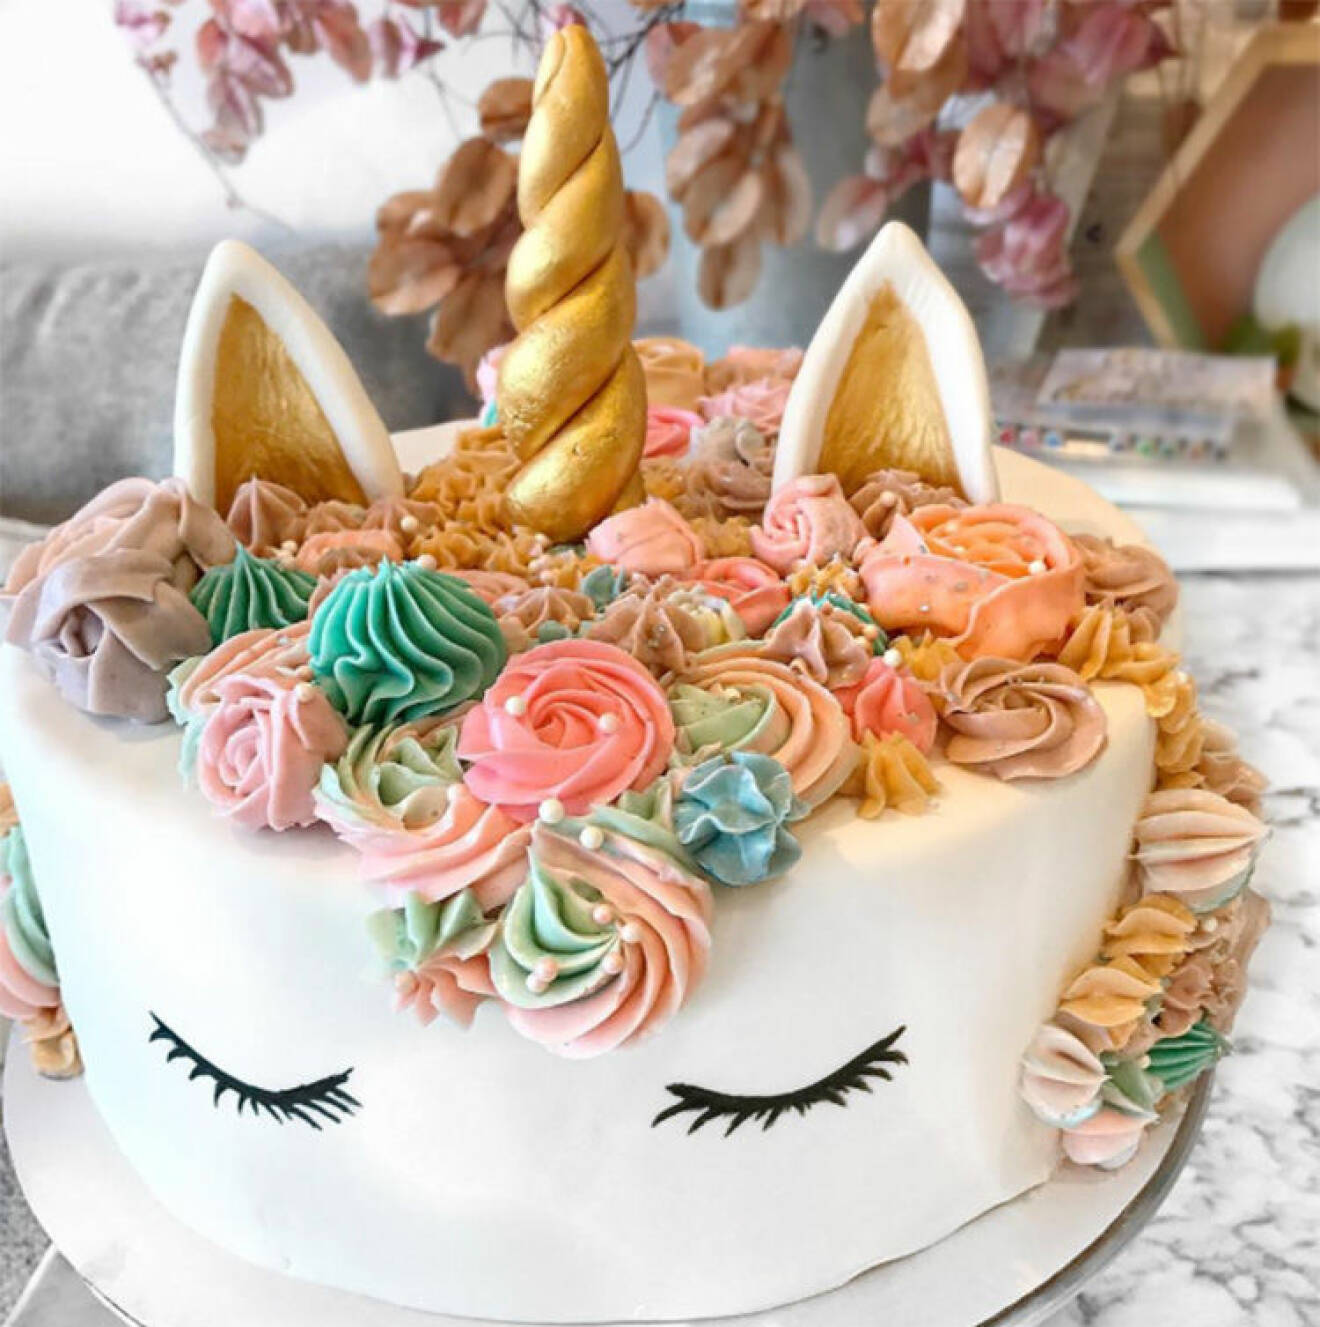 En tårta som ser ut som en unicorn